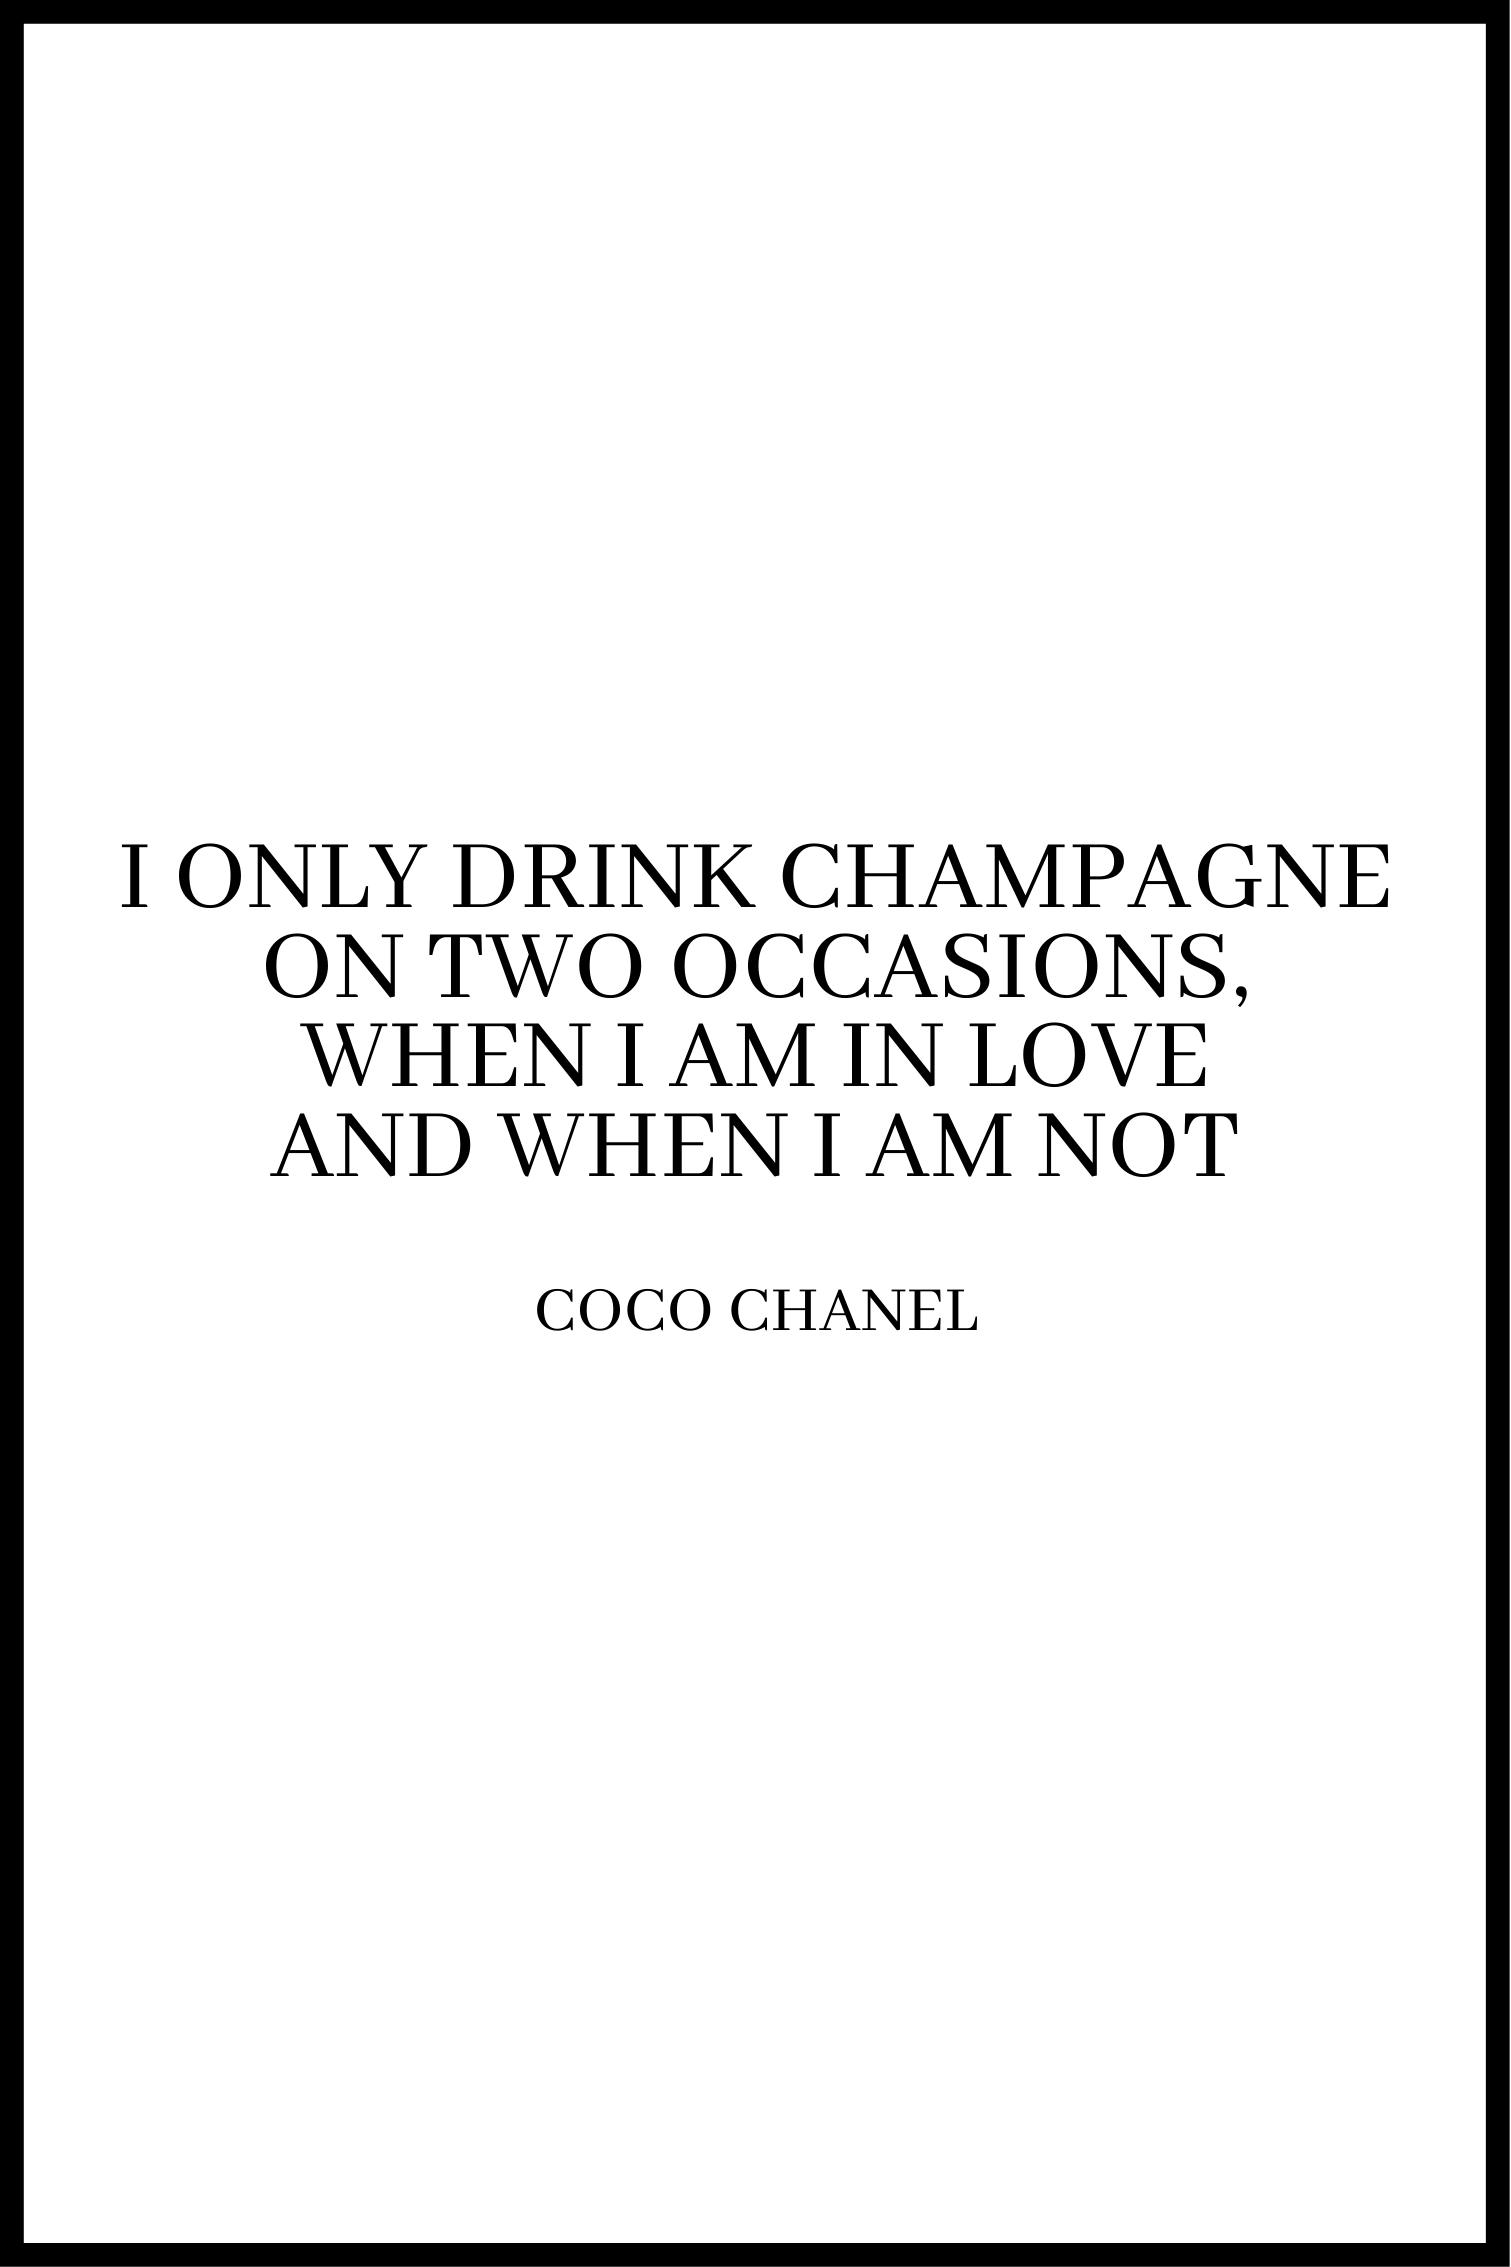 Drick champagne affisch